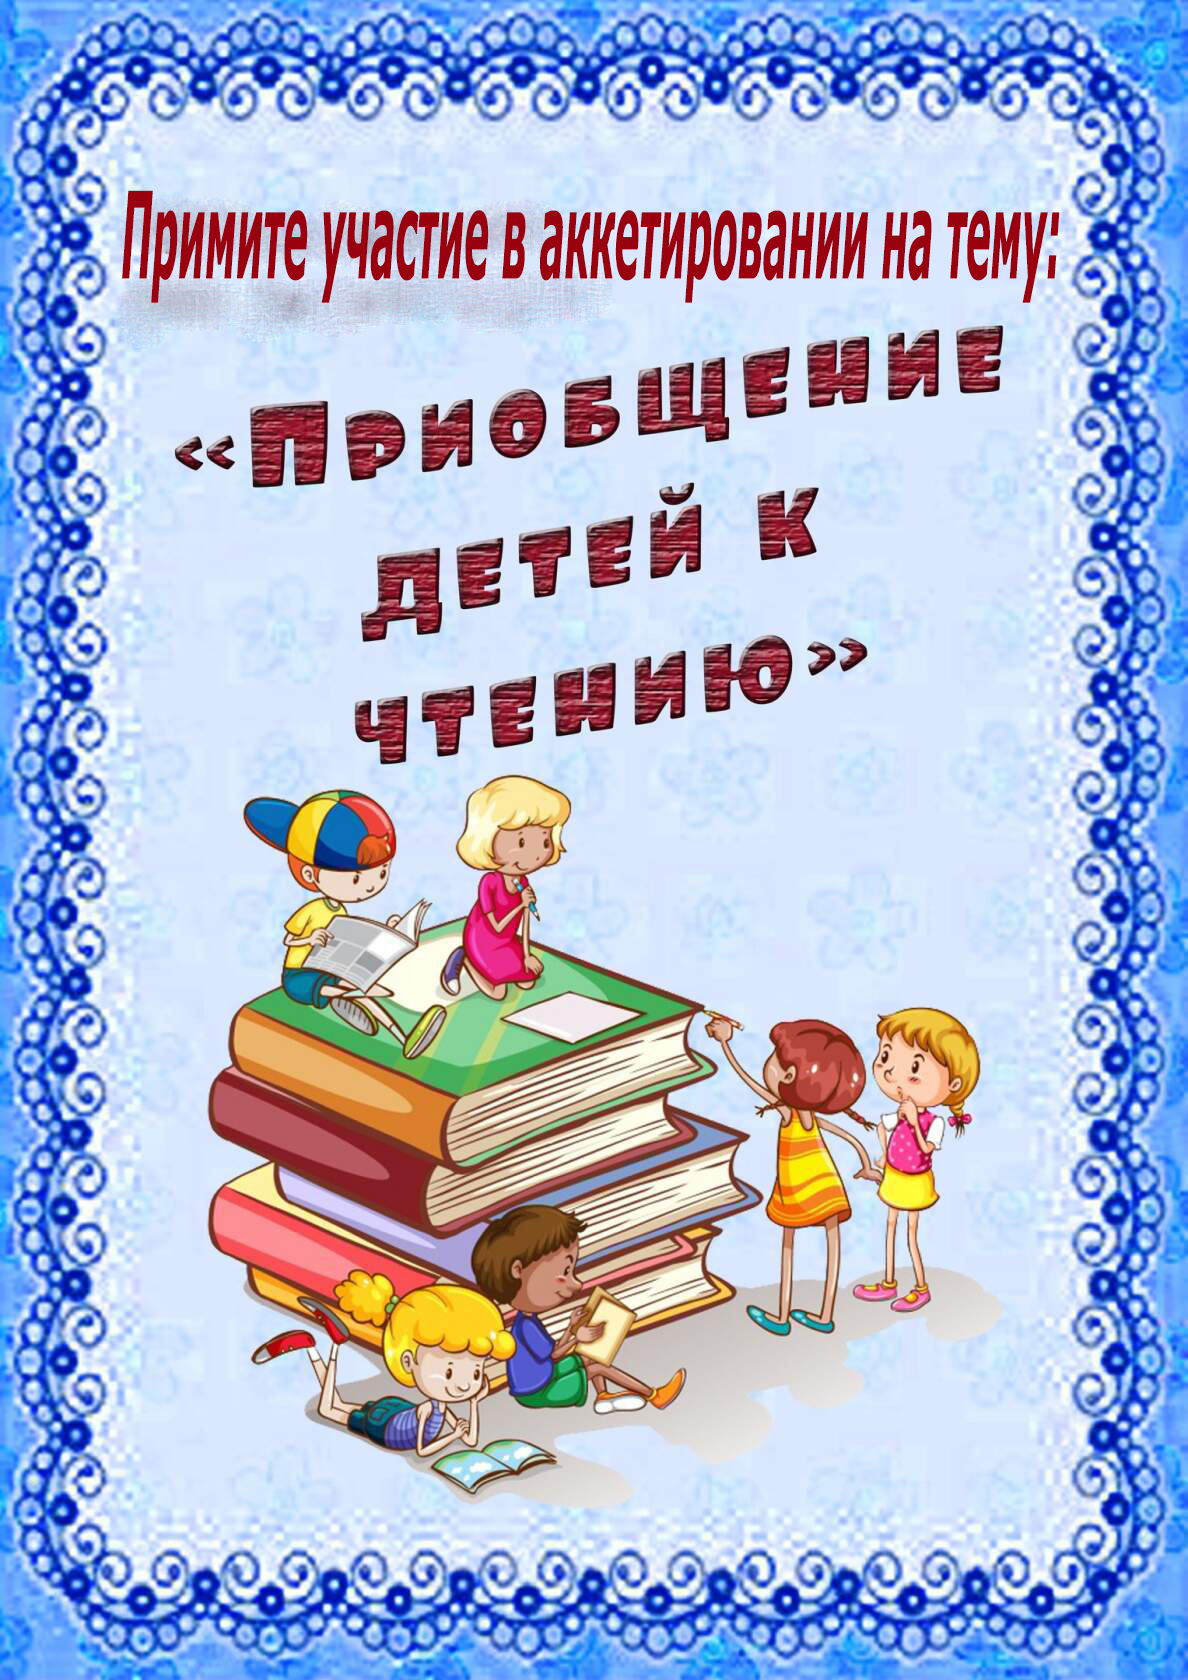 Отчет день книги в детском саду. Консультация для родителей чтение. Книги для детей. Приобщение детей к чтению. Консультация для ролителейкниги.